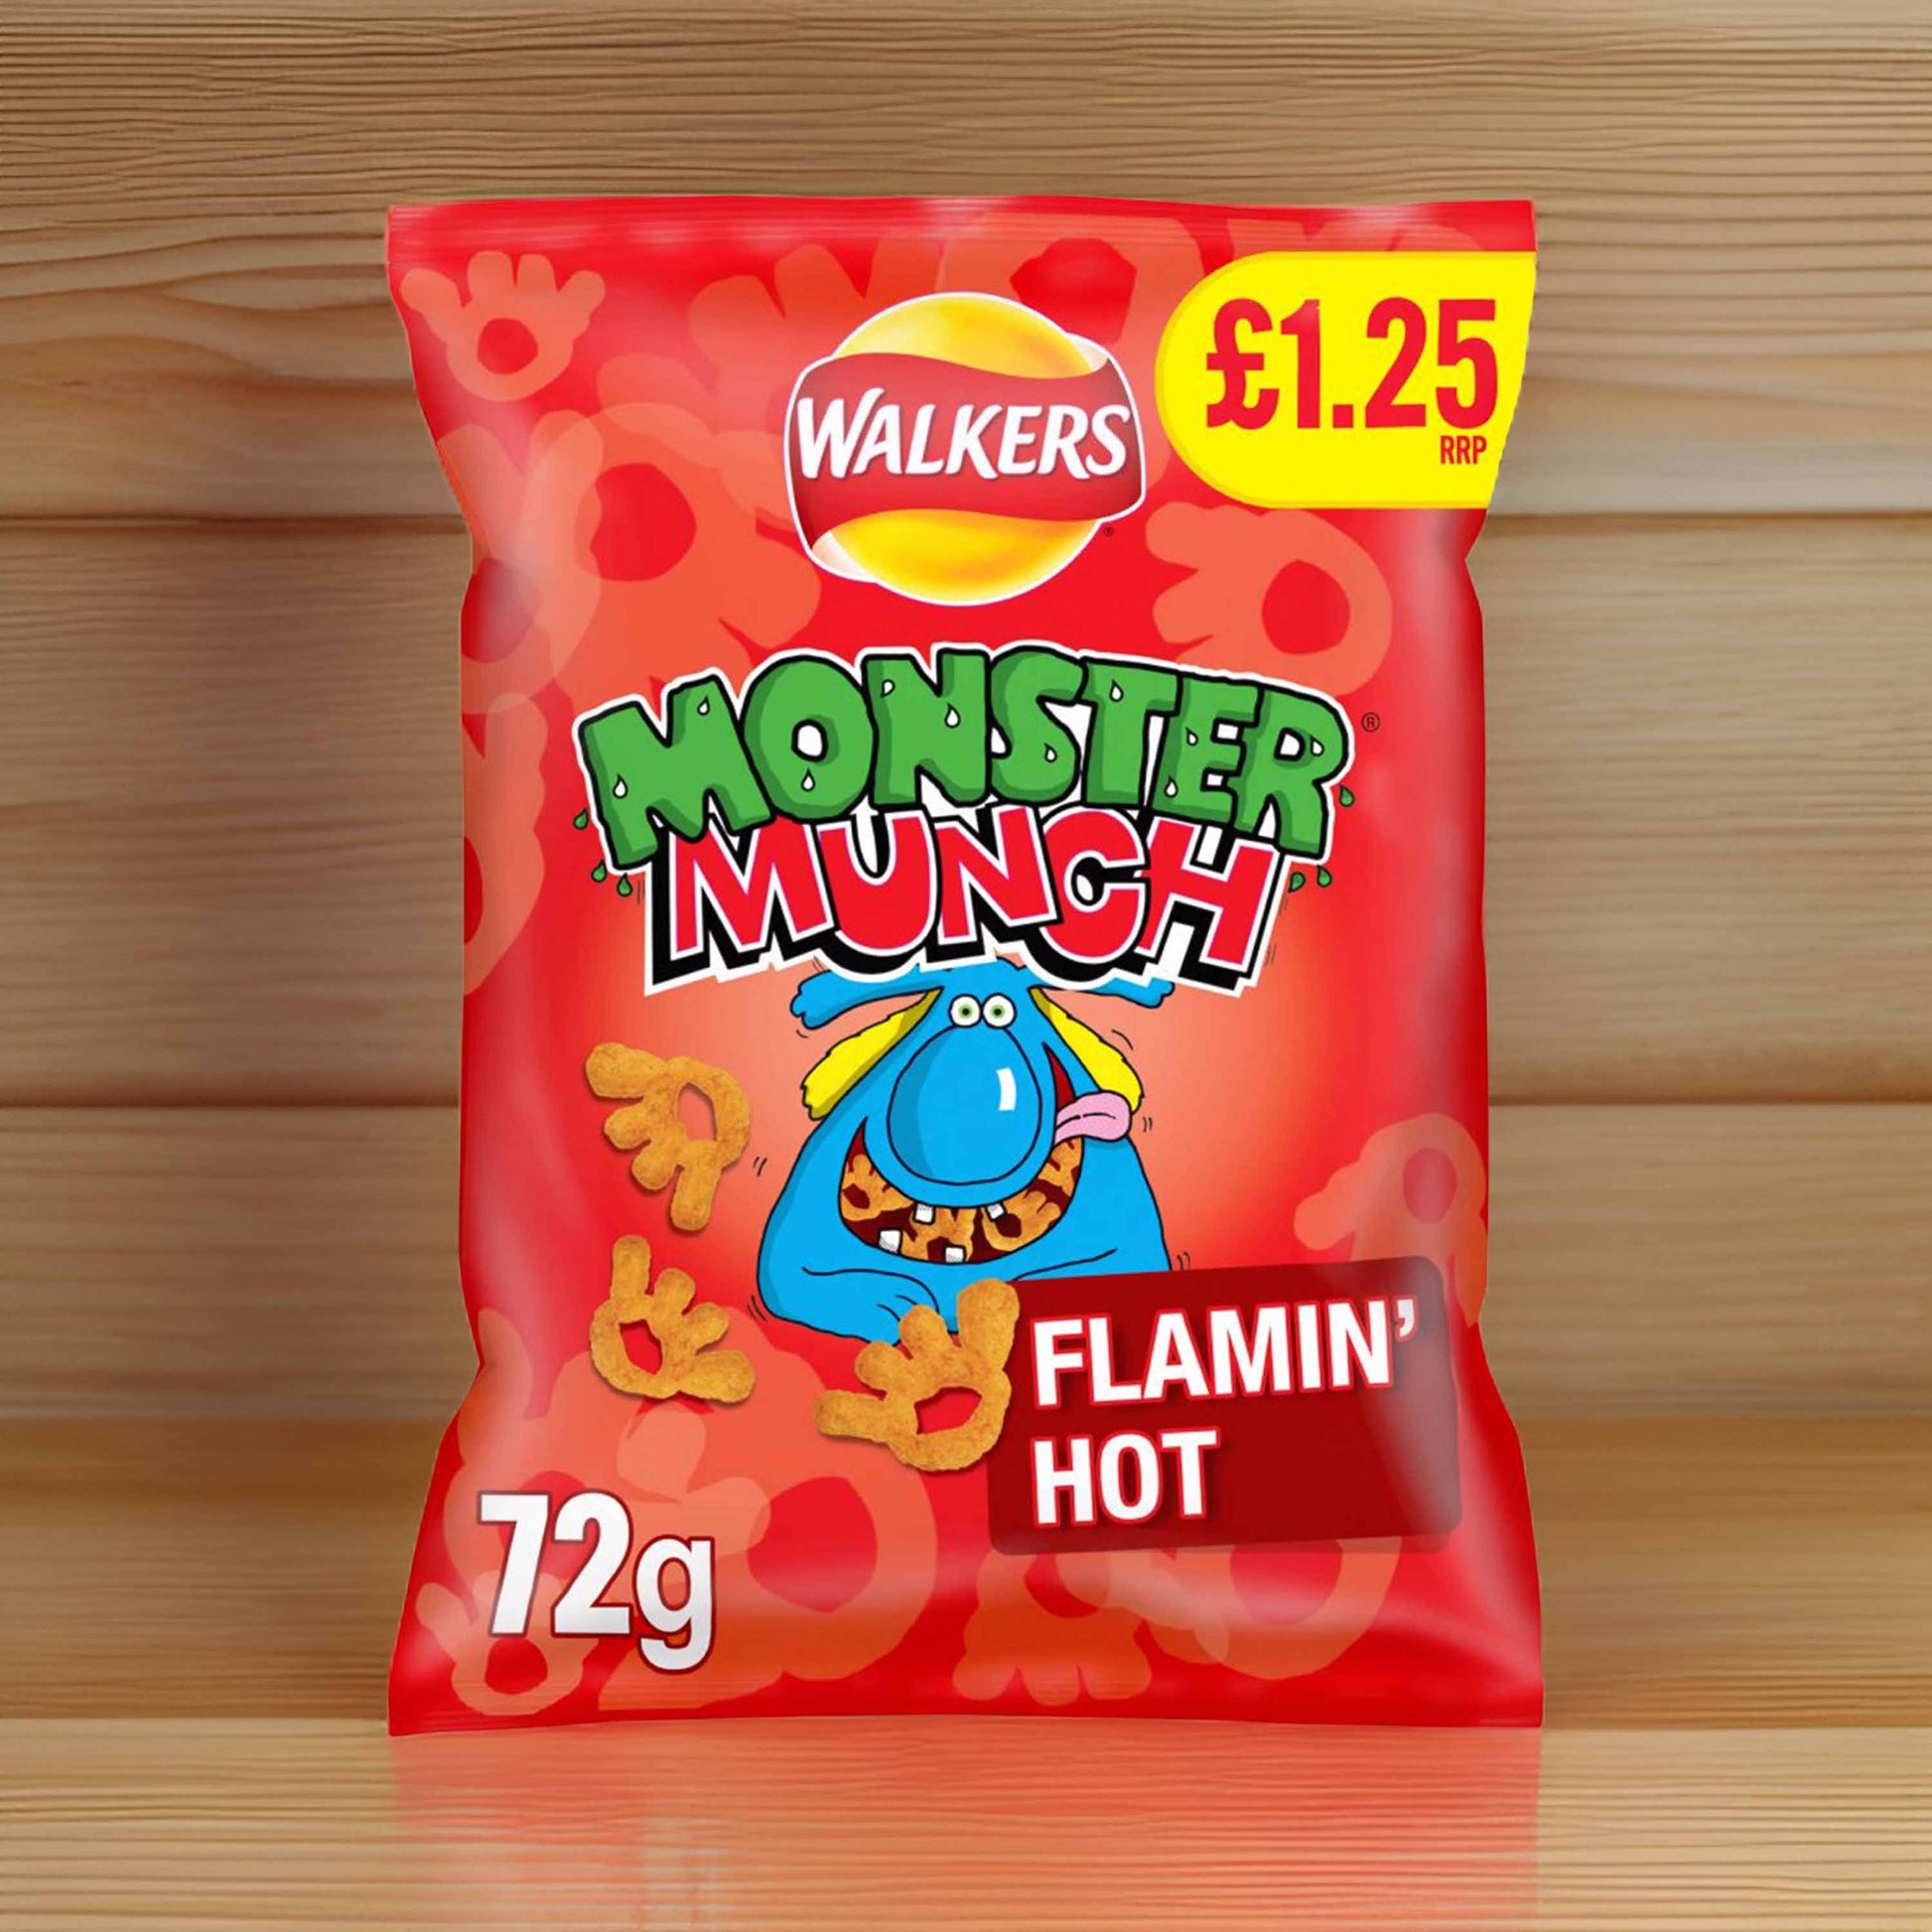 Monster Munch Flamin’ Hot 72g – (£1.25 Bags) - British Crisps